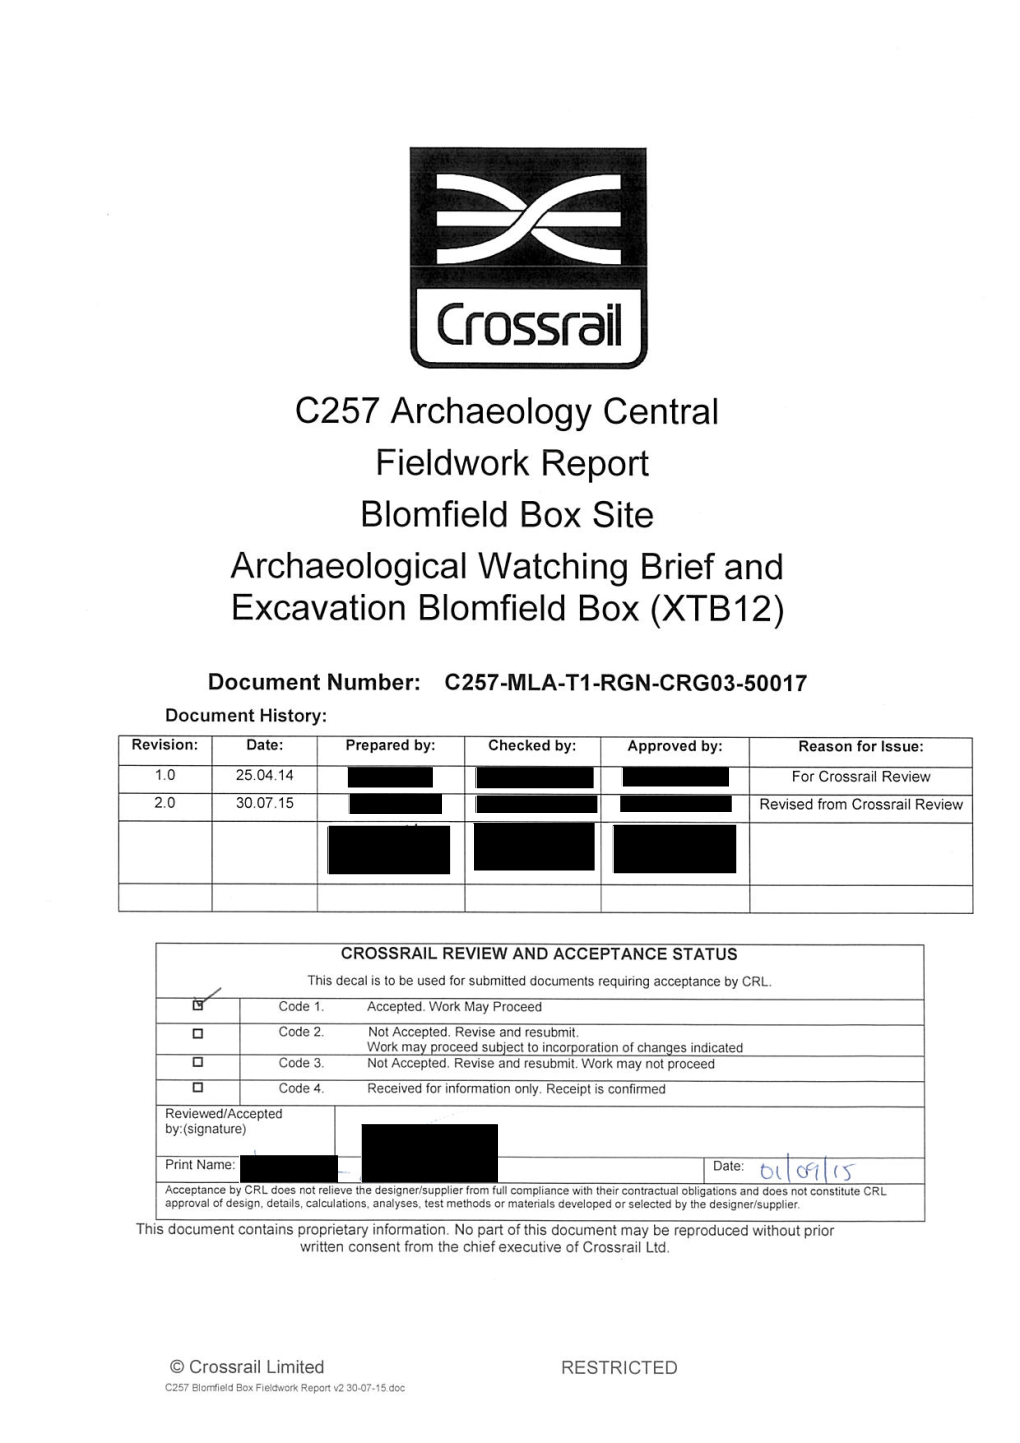 C257 LIS XTB12 Blomfield Box Fieldwork Report